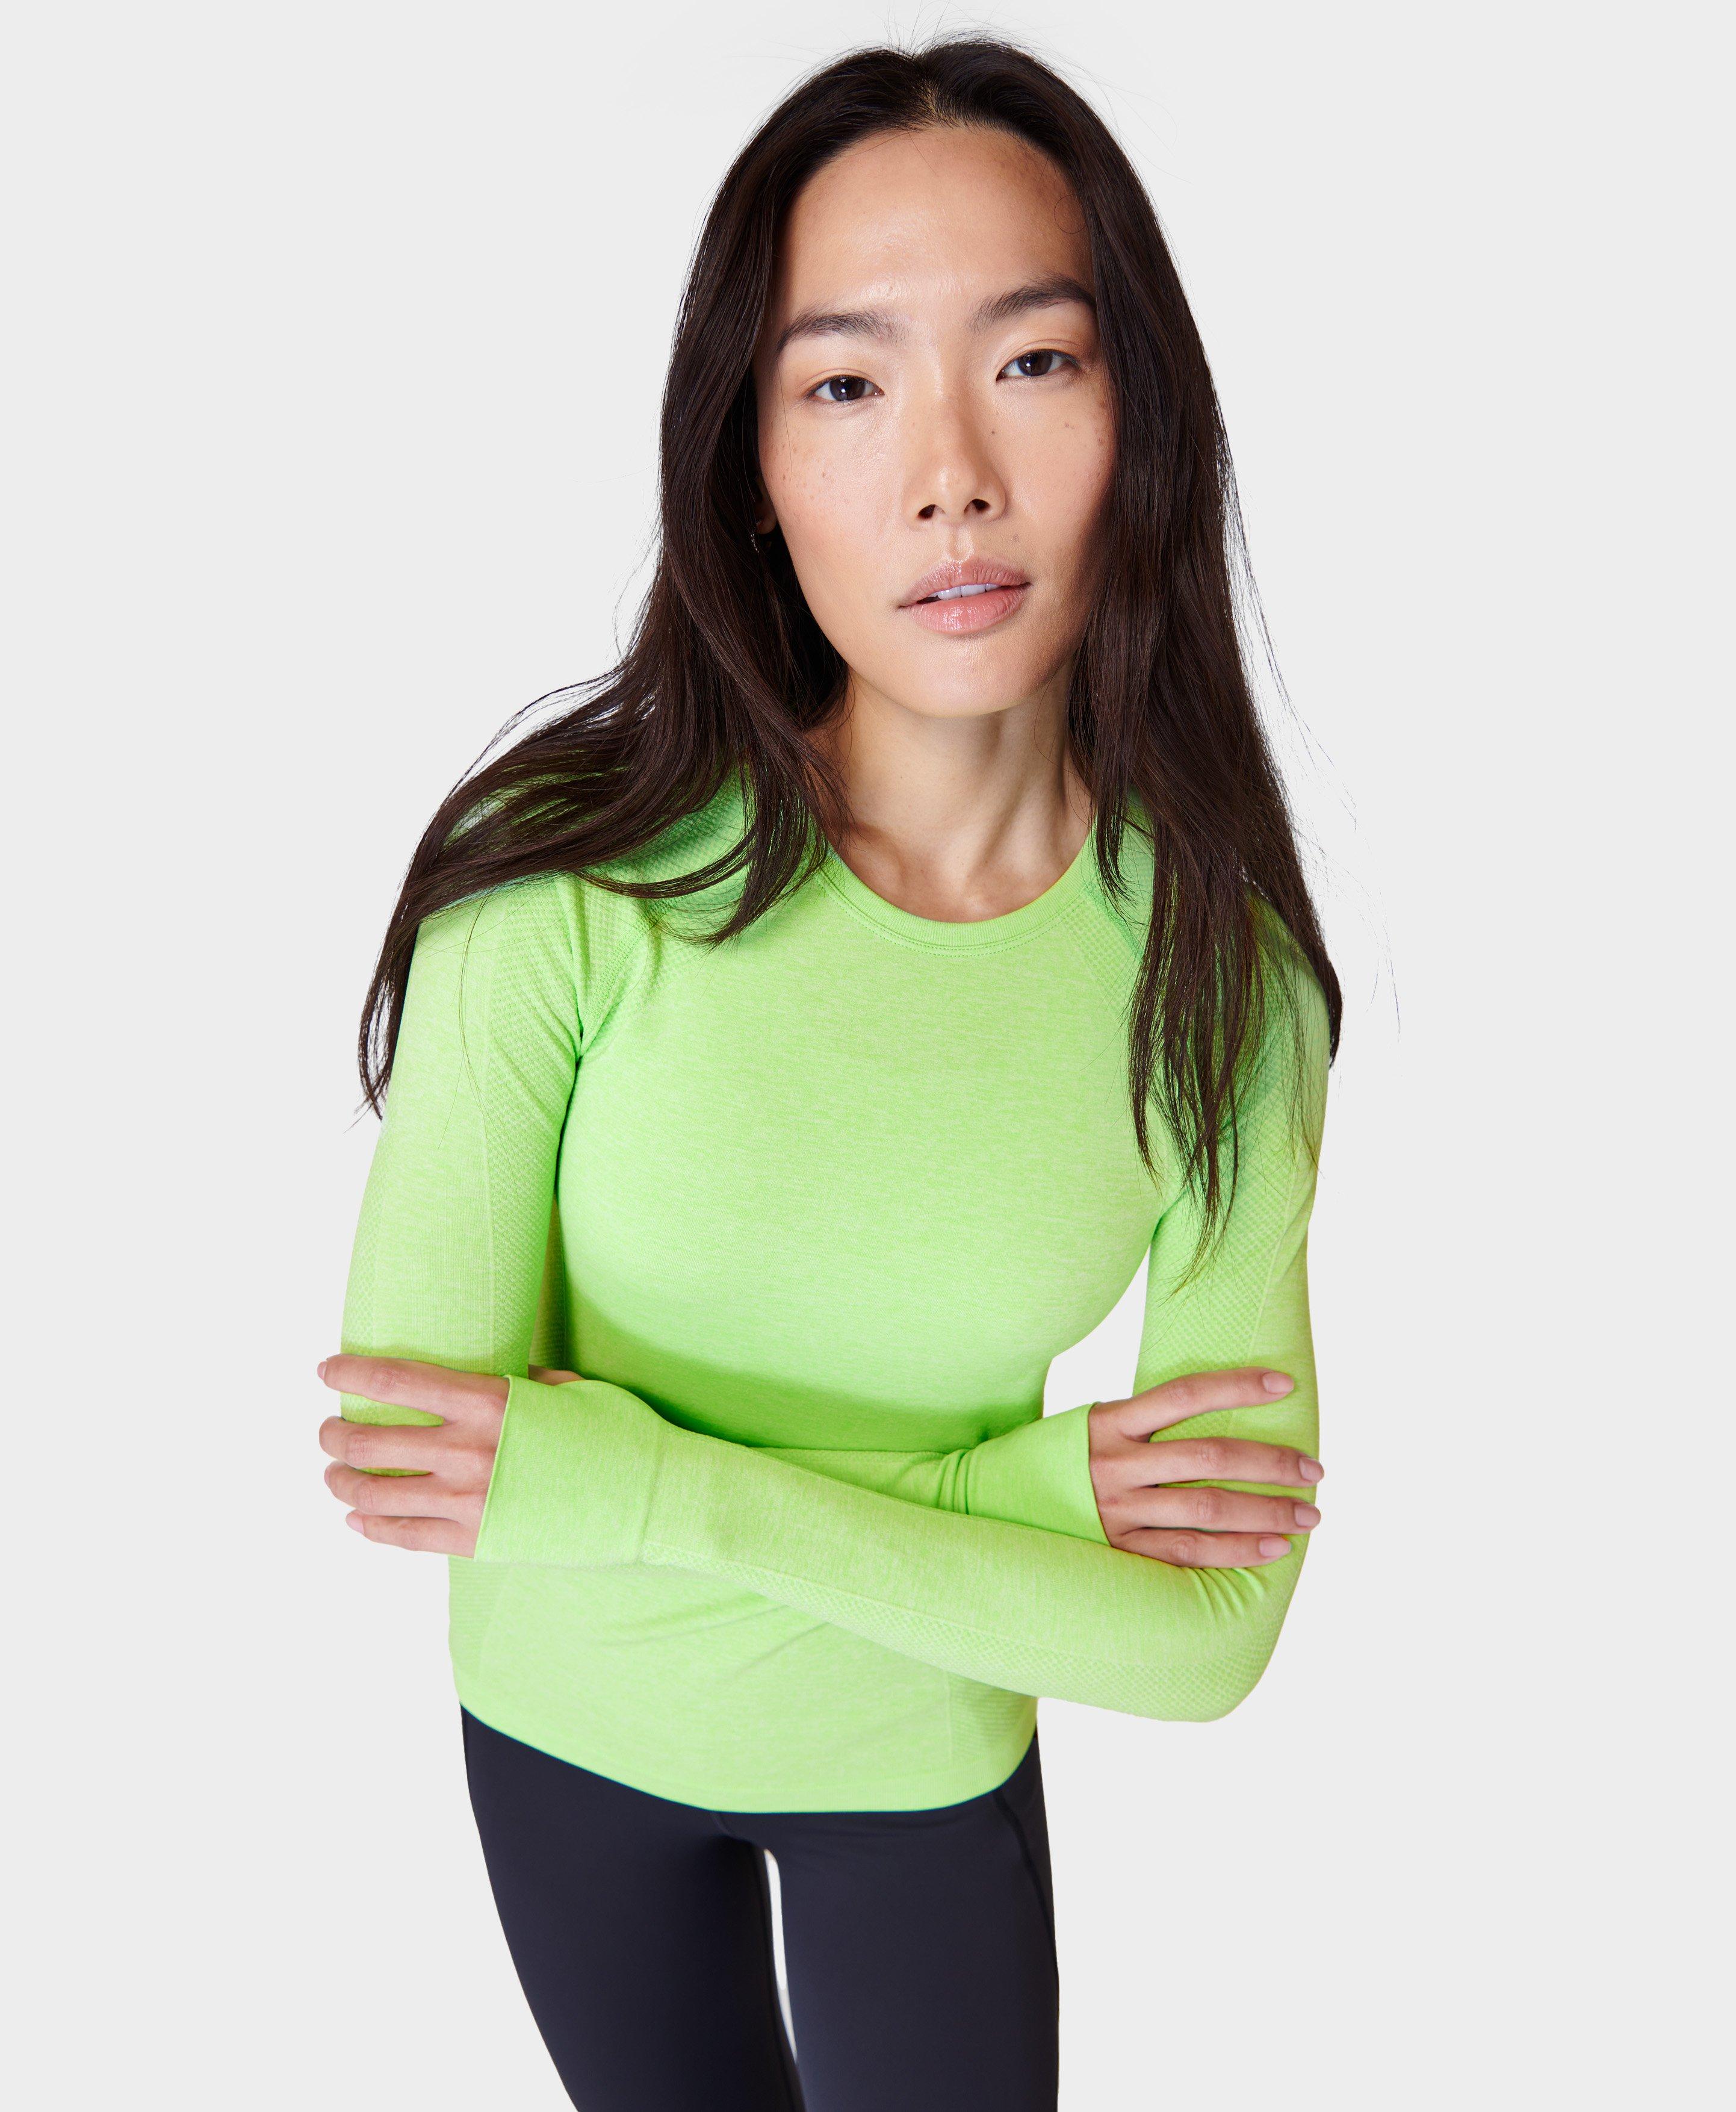 Althee Women Fleece Thermal Long Sleeve Running Shirt Workout Tops